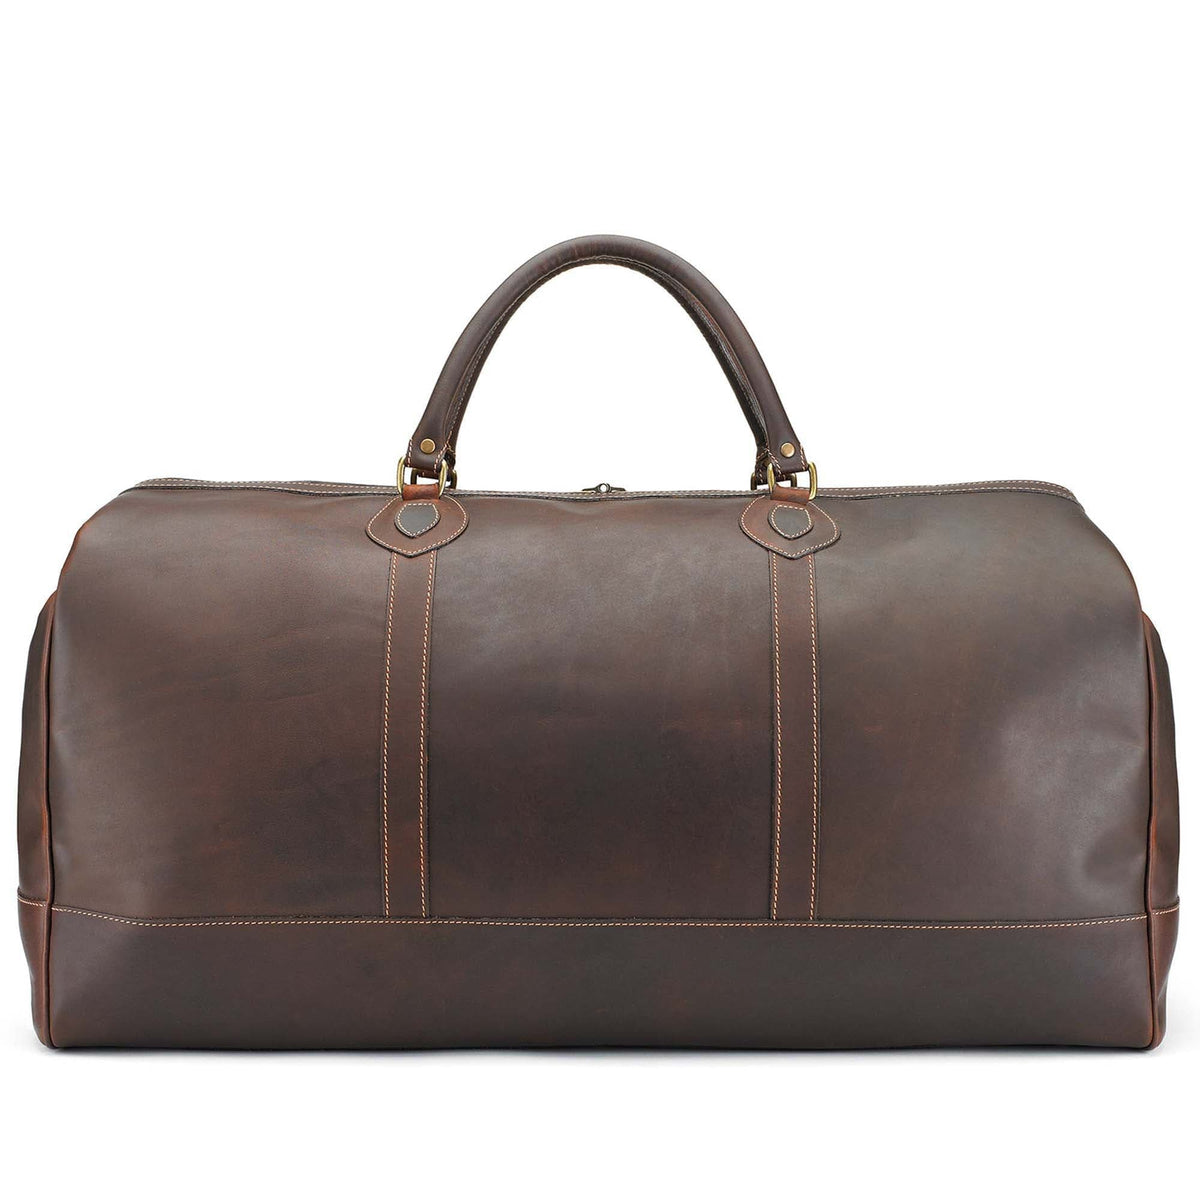 Tusting Travel Medium Leather Weekender Luggage